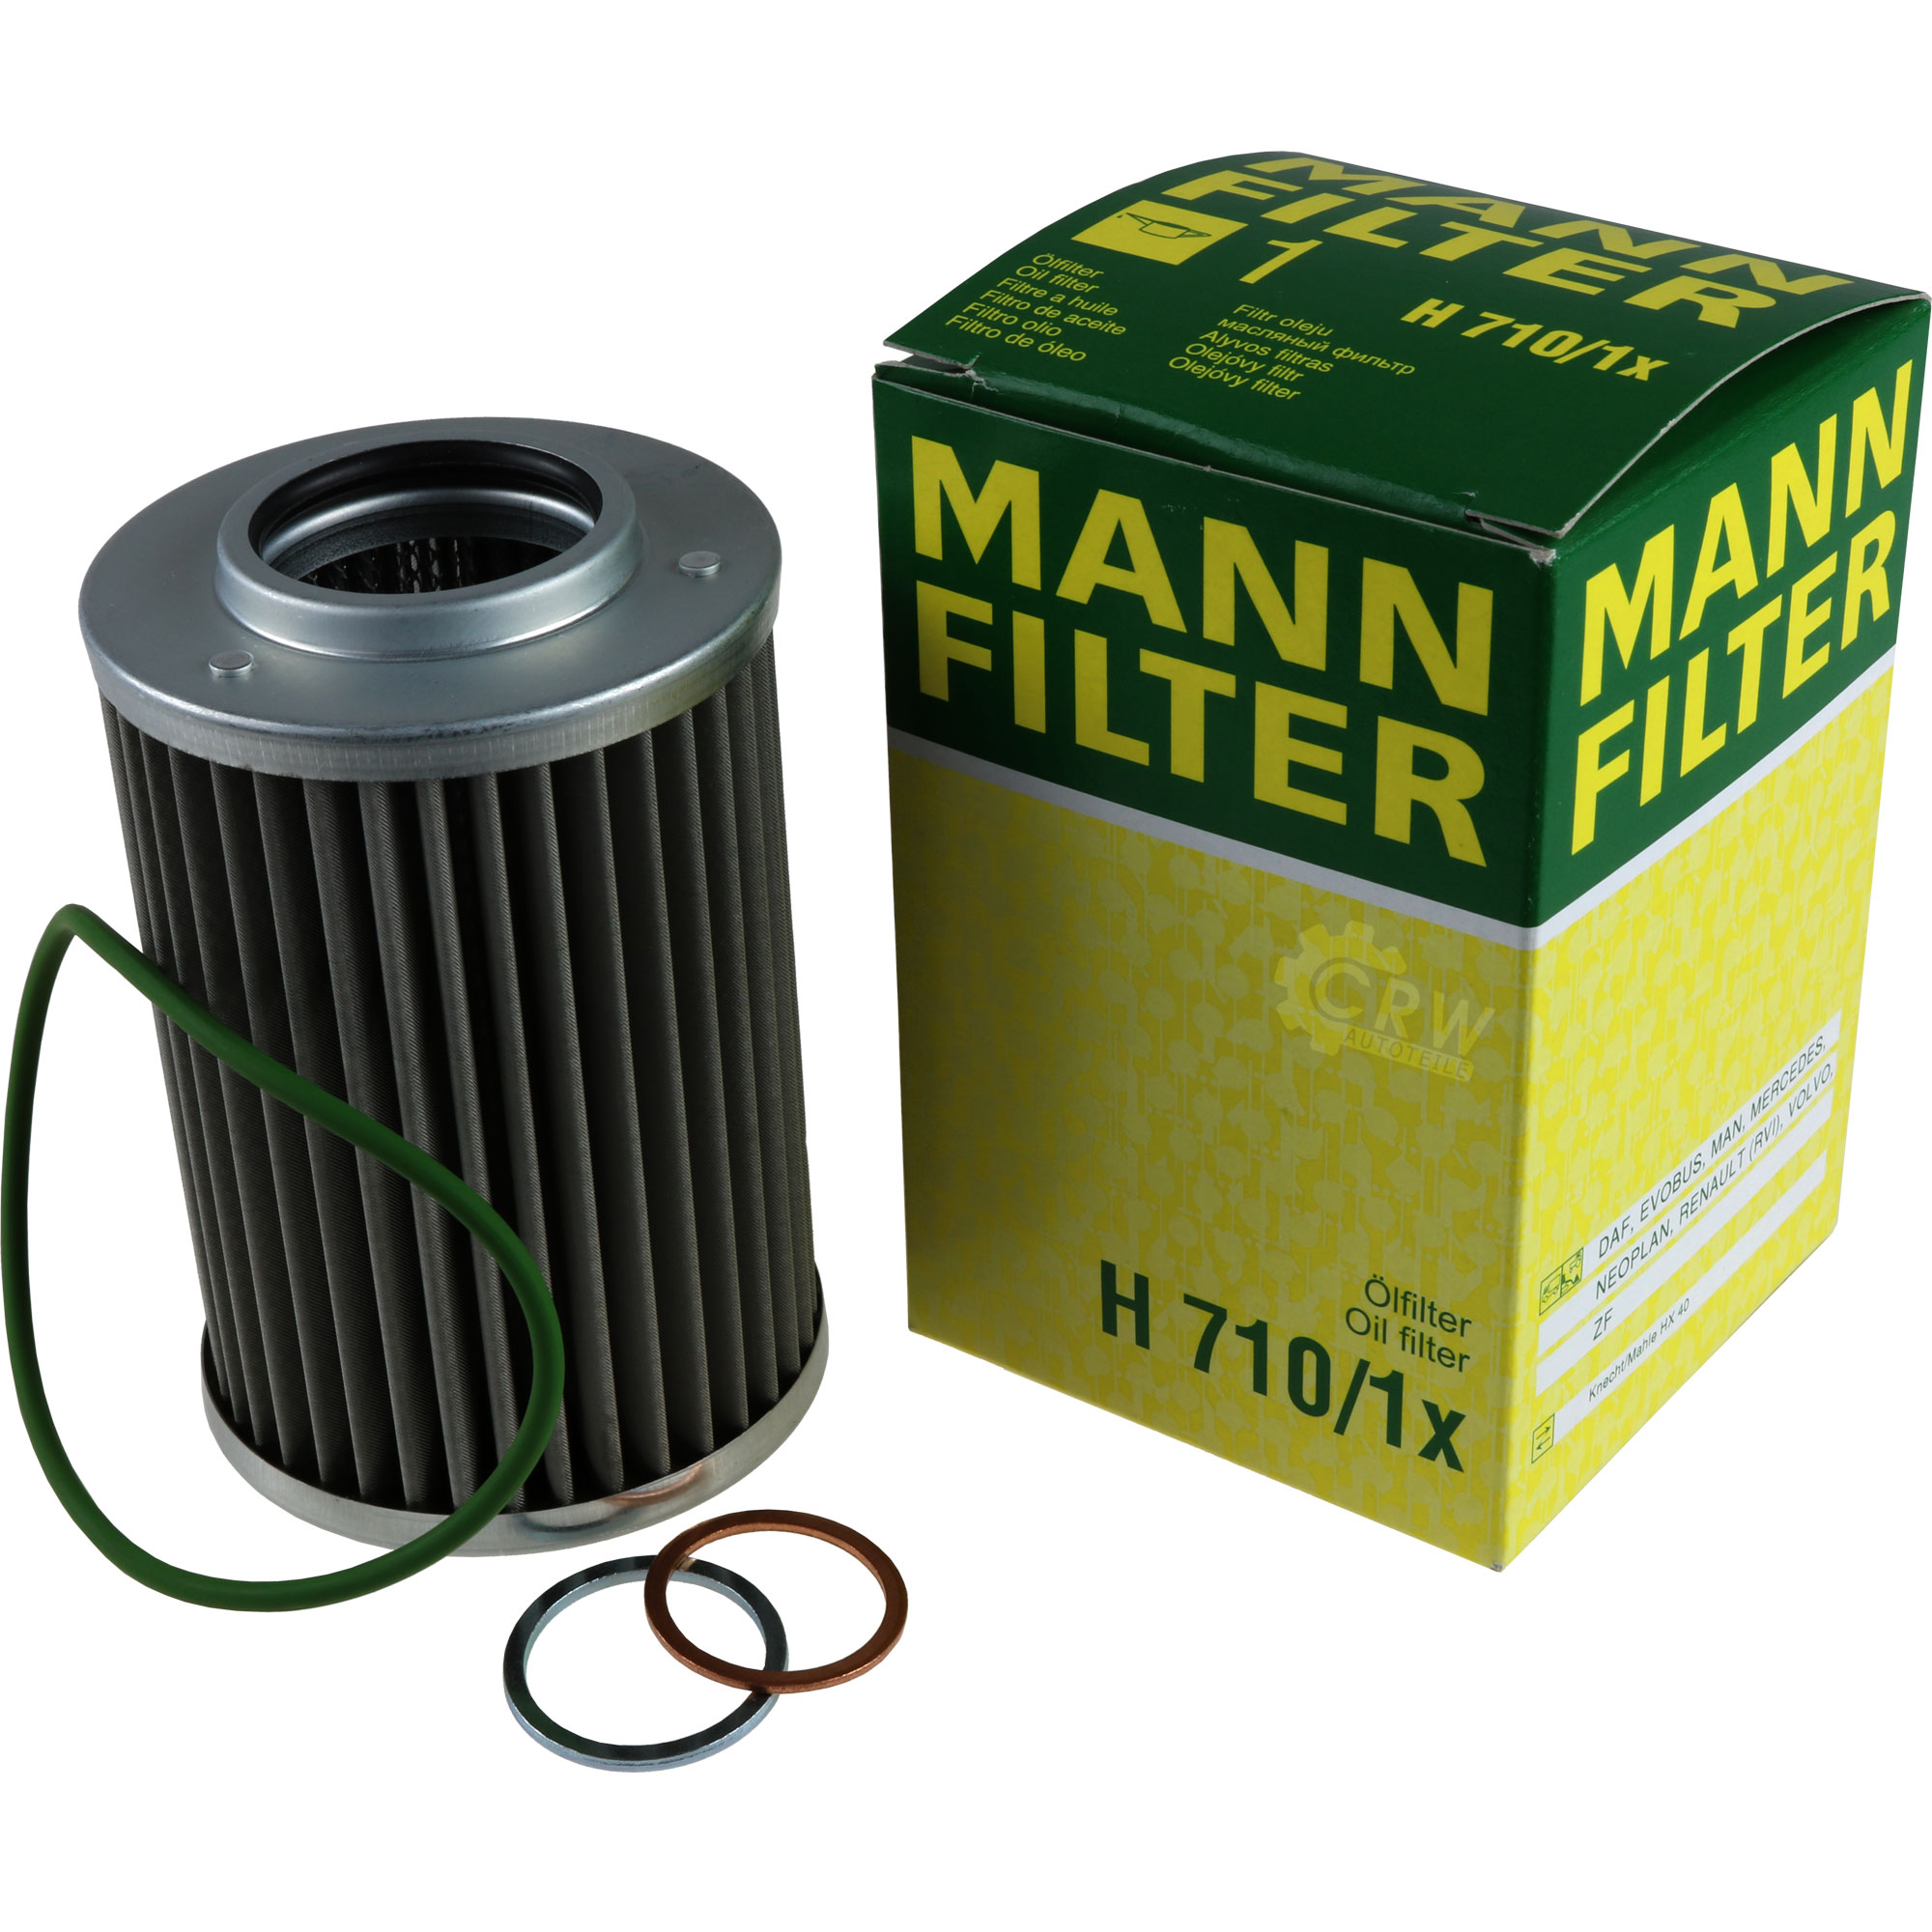 MANN-FILTER Hydraulikfilter für Automatikgetriebe H 710/1 x